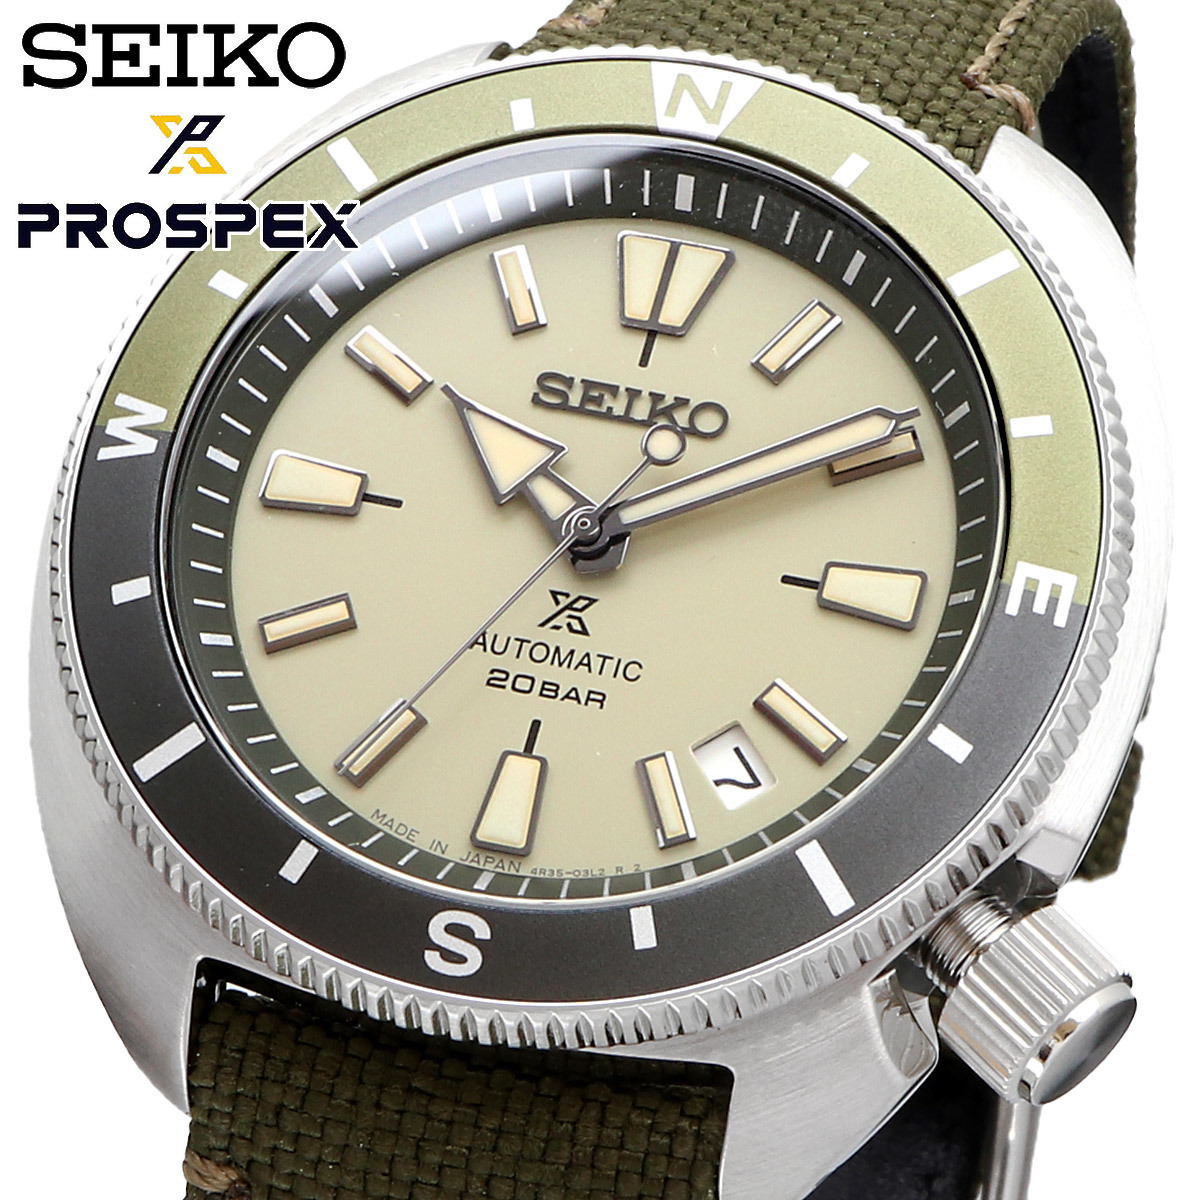 【超ポイント祭?期間限定】 海外モデル メンズ 腕時計 セイコー SEIKO MADE SRPG13J1 自動巻き プロスペックス PROSPEX 日本製 JAPAN IN 海外モデル